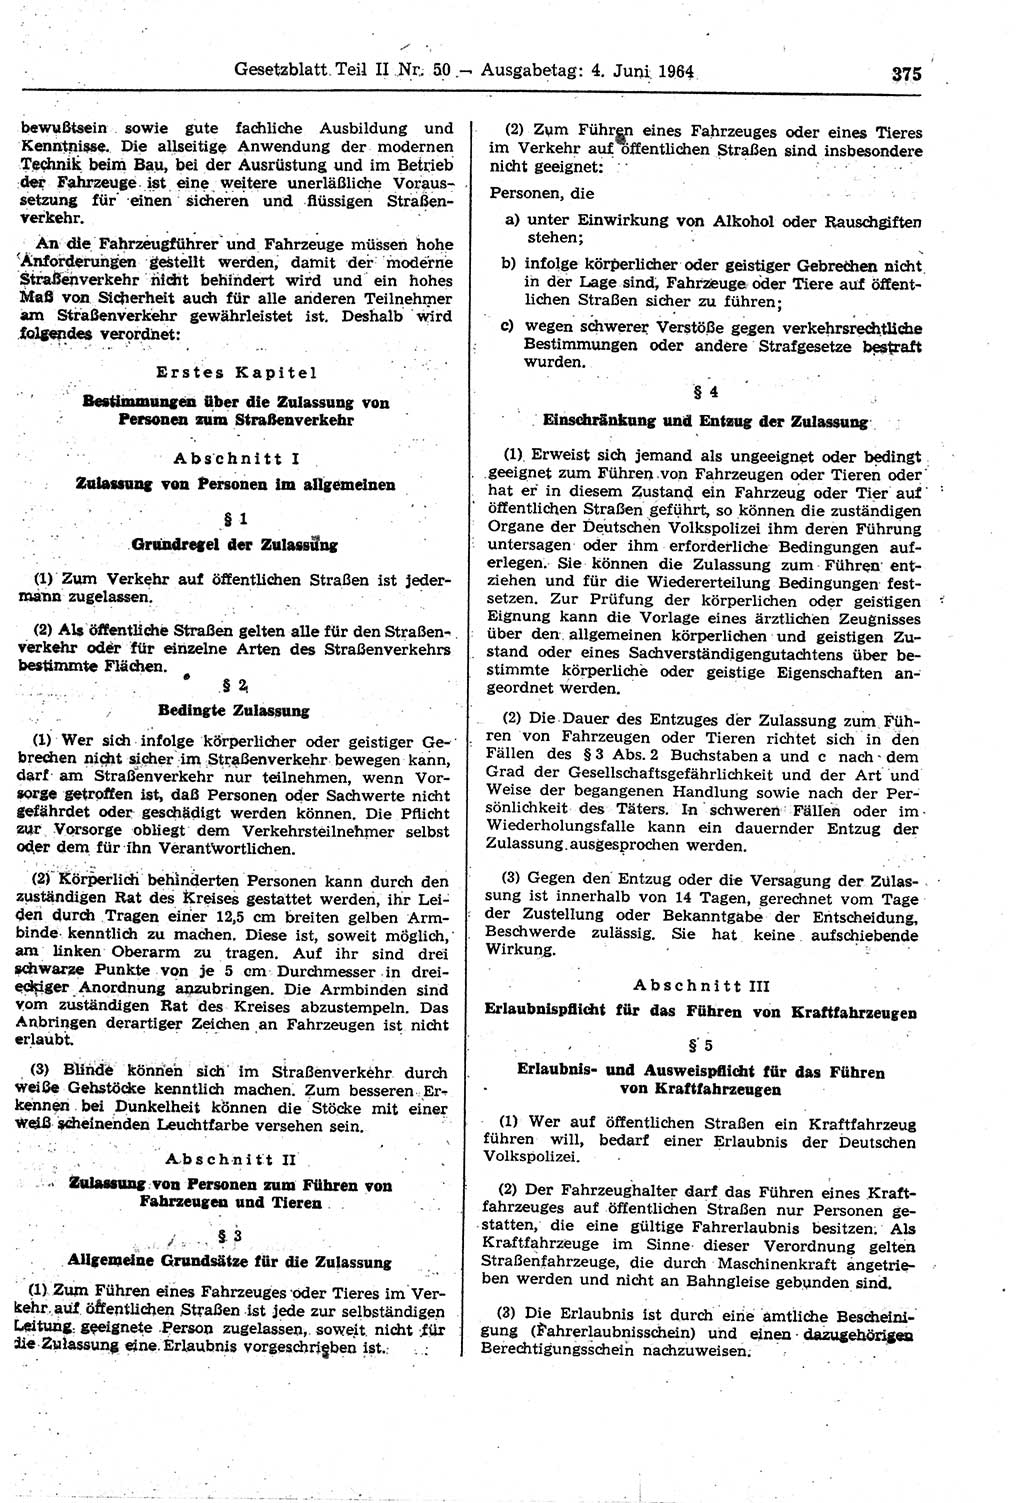 Gesetzblatt (GBl.) der Deutschen Demokratischen Republik (DDR) Teil ⅠⅠ 1964, Seite 375 (GBl. DDR ⅠⅠ 1964, S. 375)